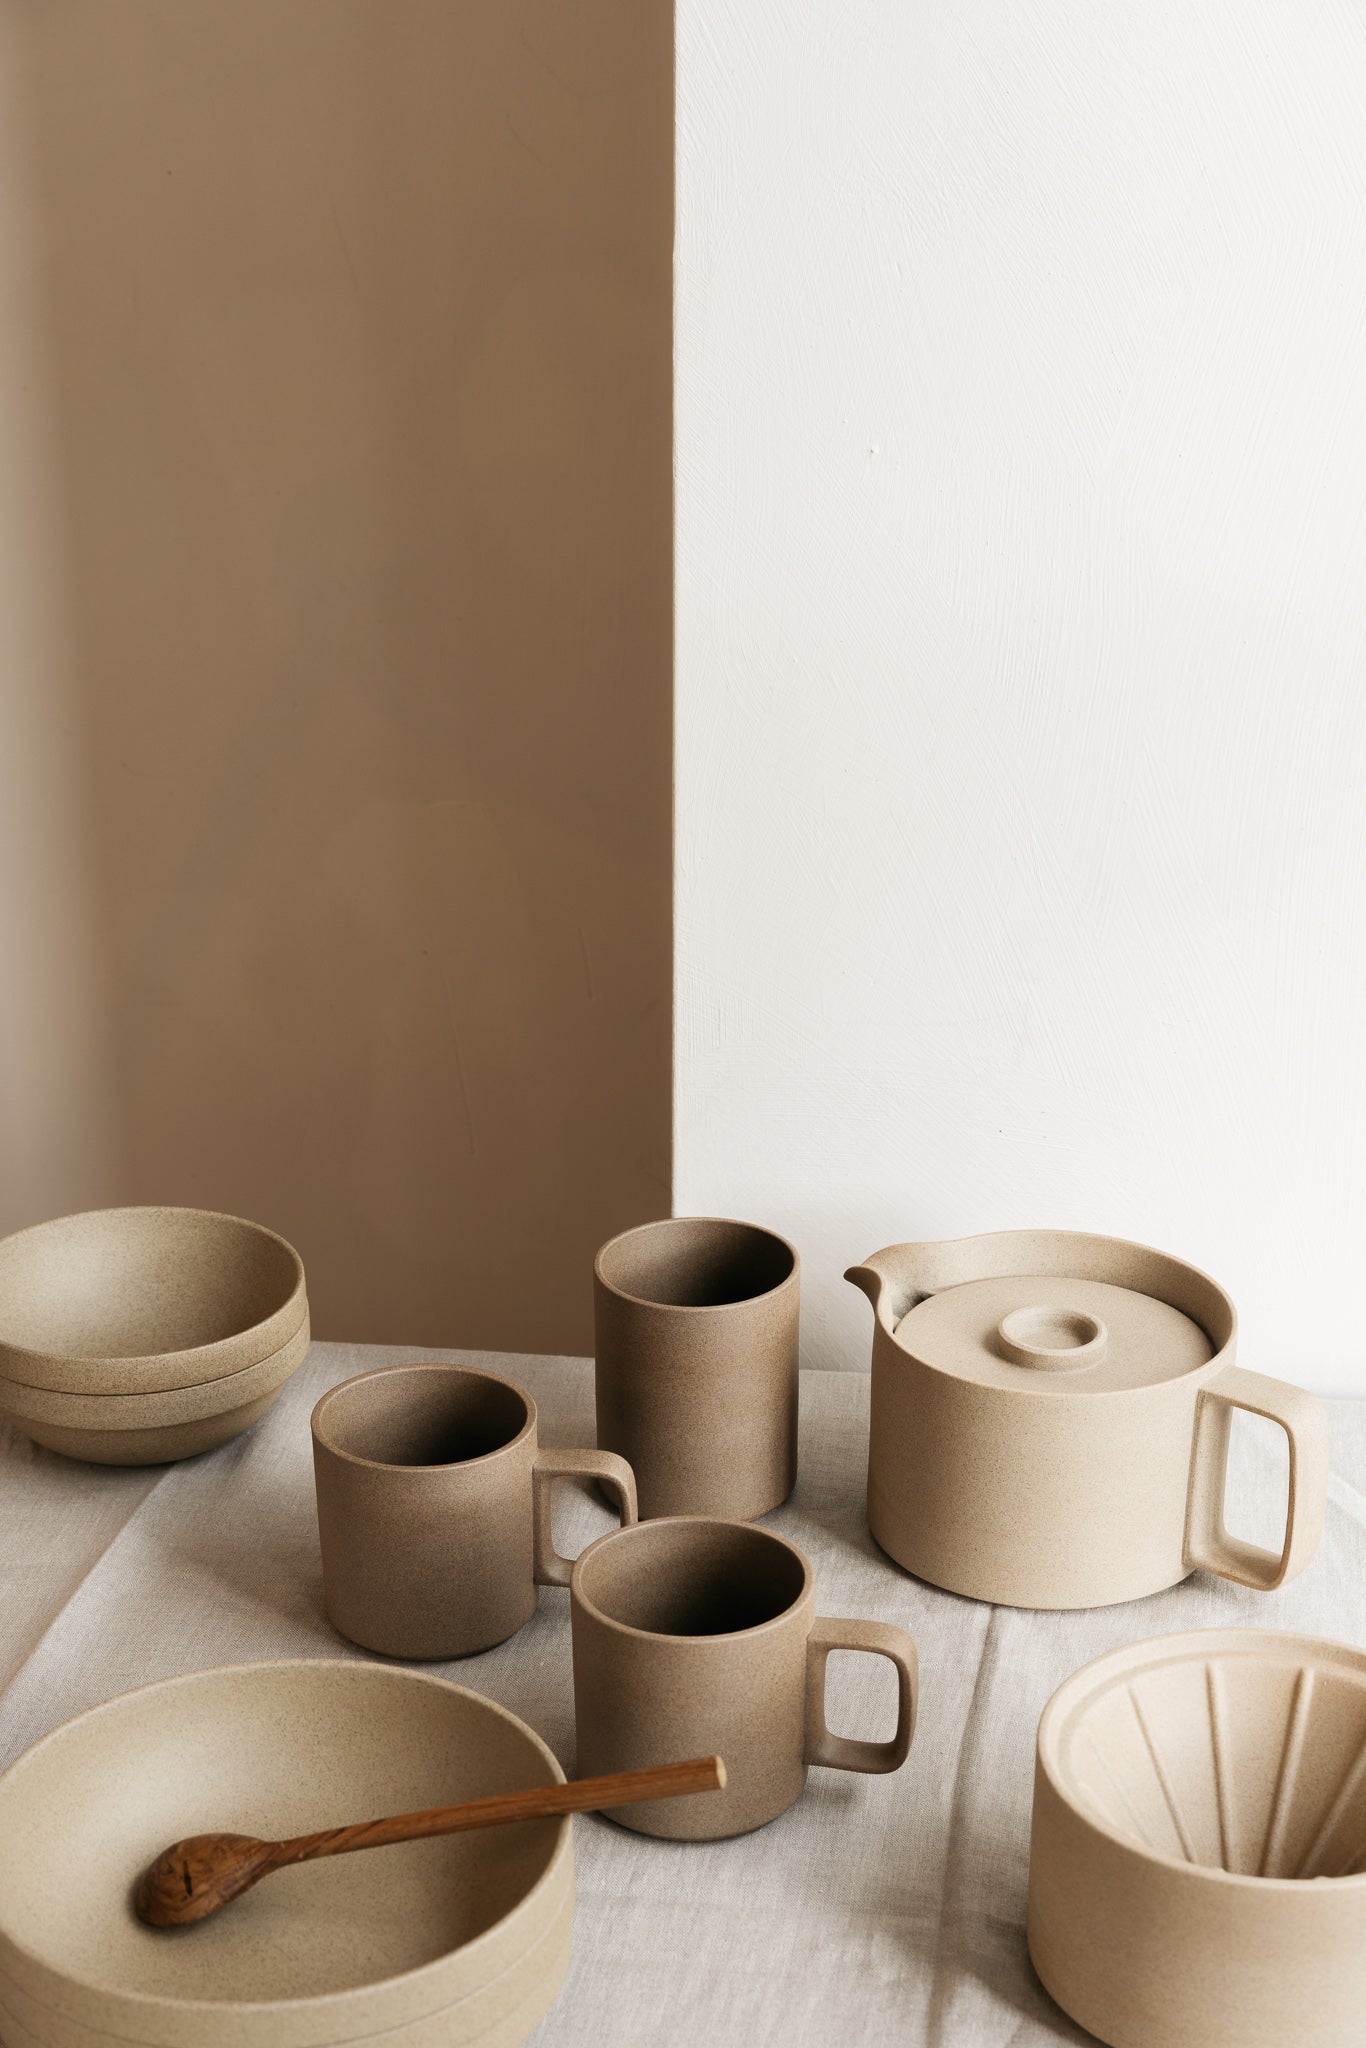 Covet Ceramics - How To Create A Cozy Interior Blog | Enter The Loft